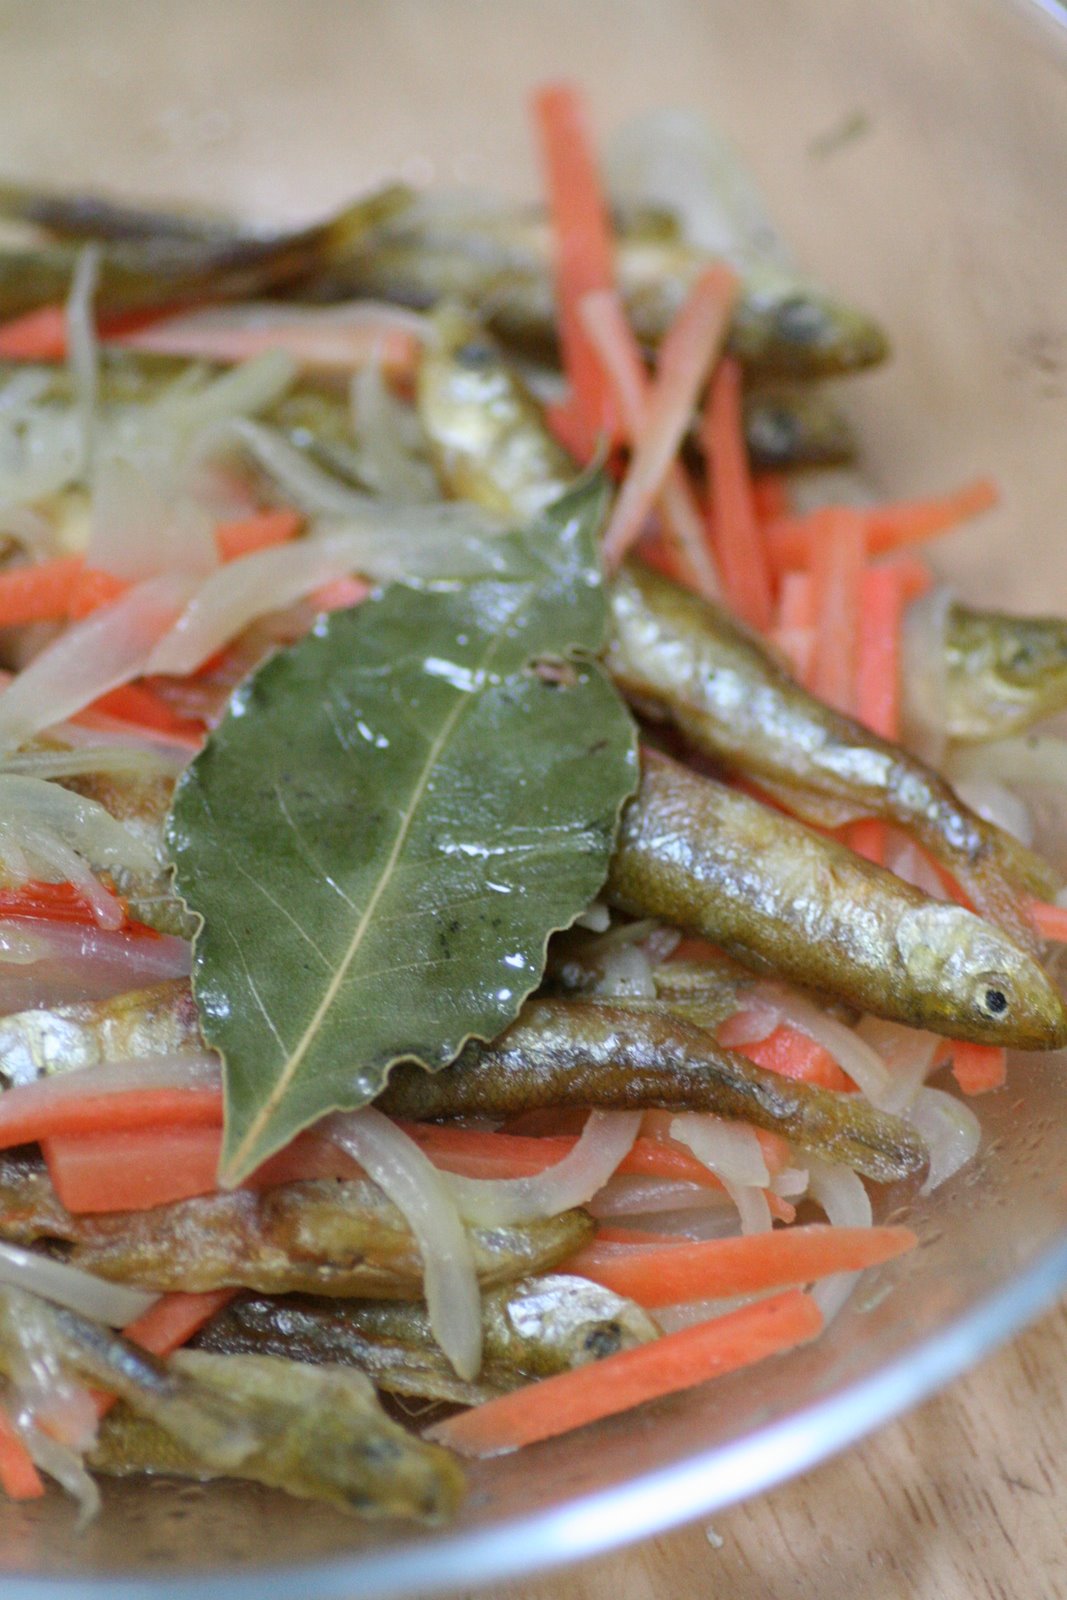 Gatto E Topo ワカサギのエスカベッシュ 野菜のスープ サヤインゲンのフリット イカとサラミソーセージの串焼き